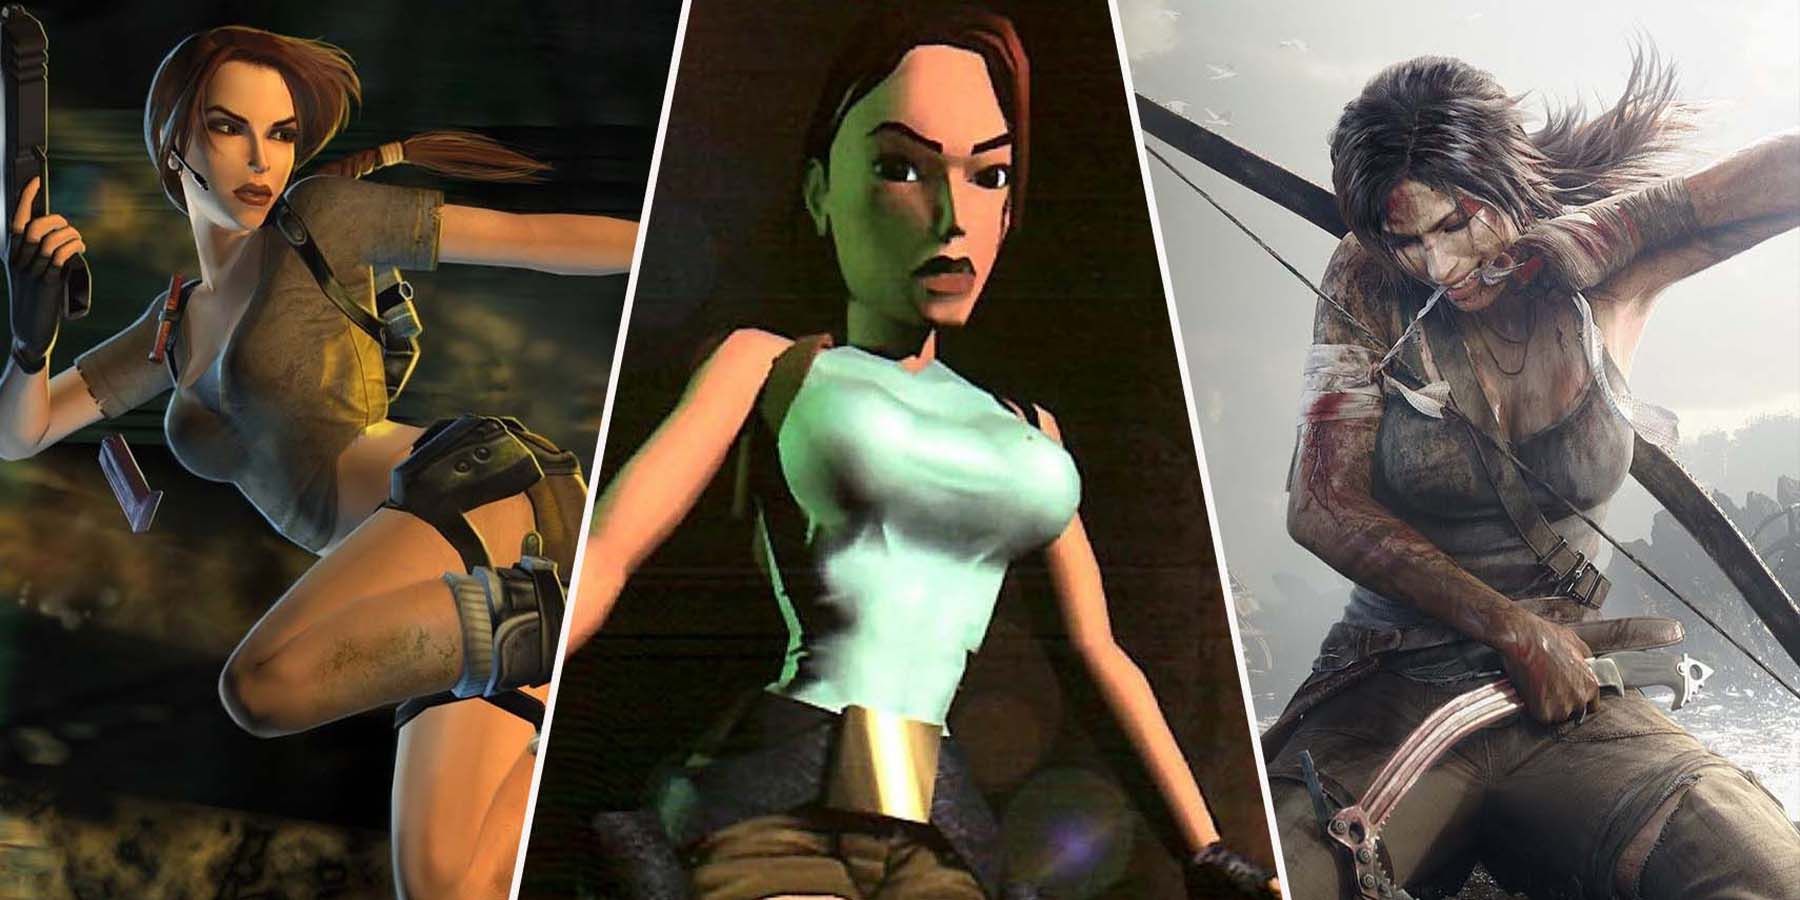 Best Tomb Raider Games